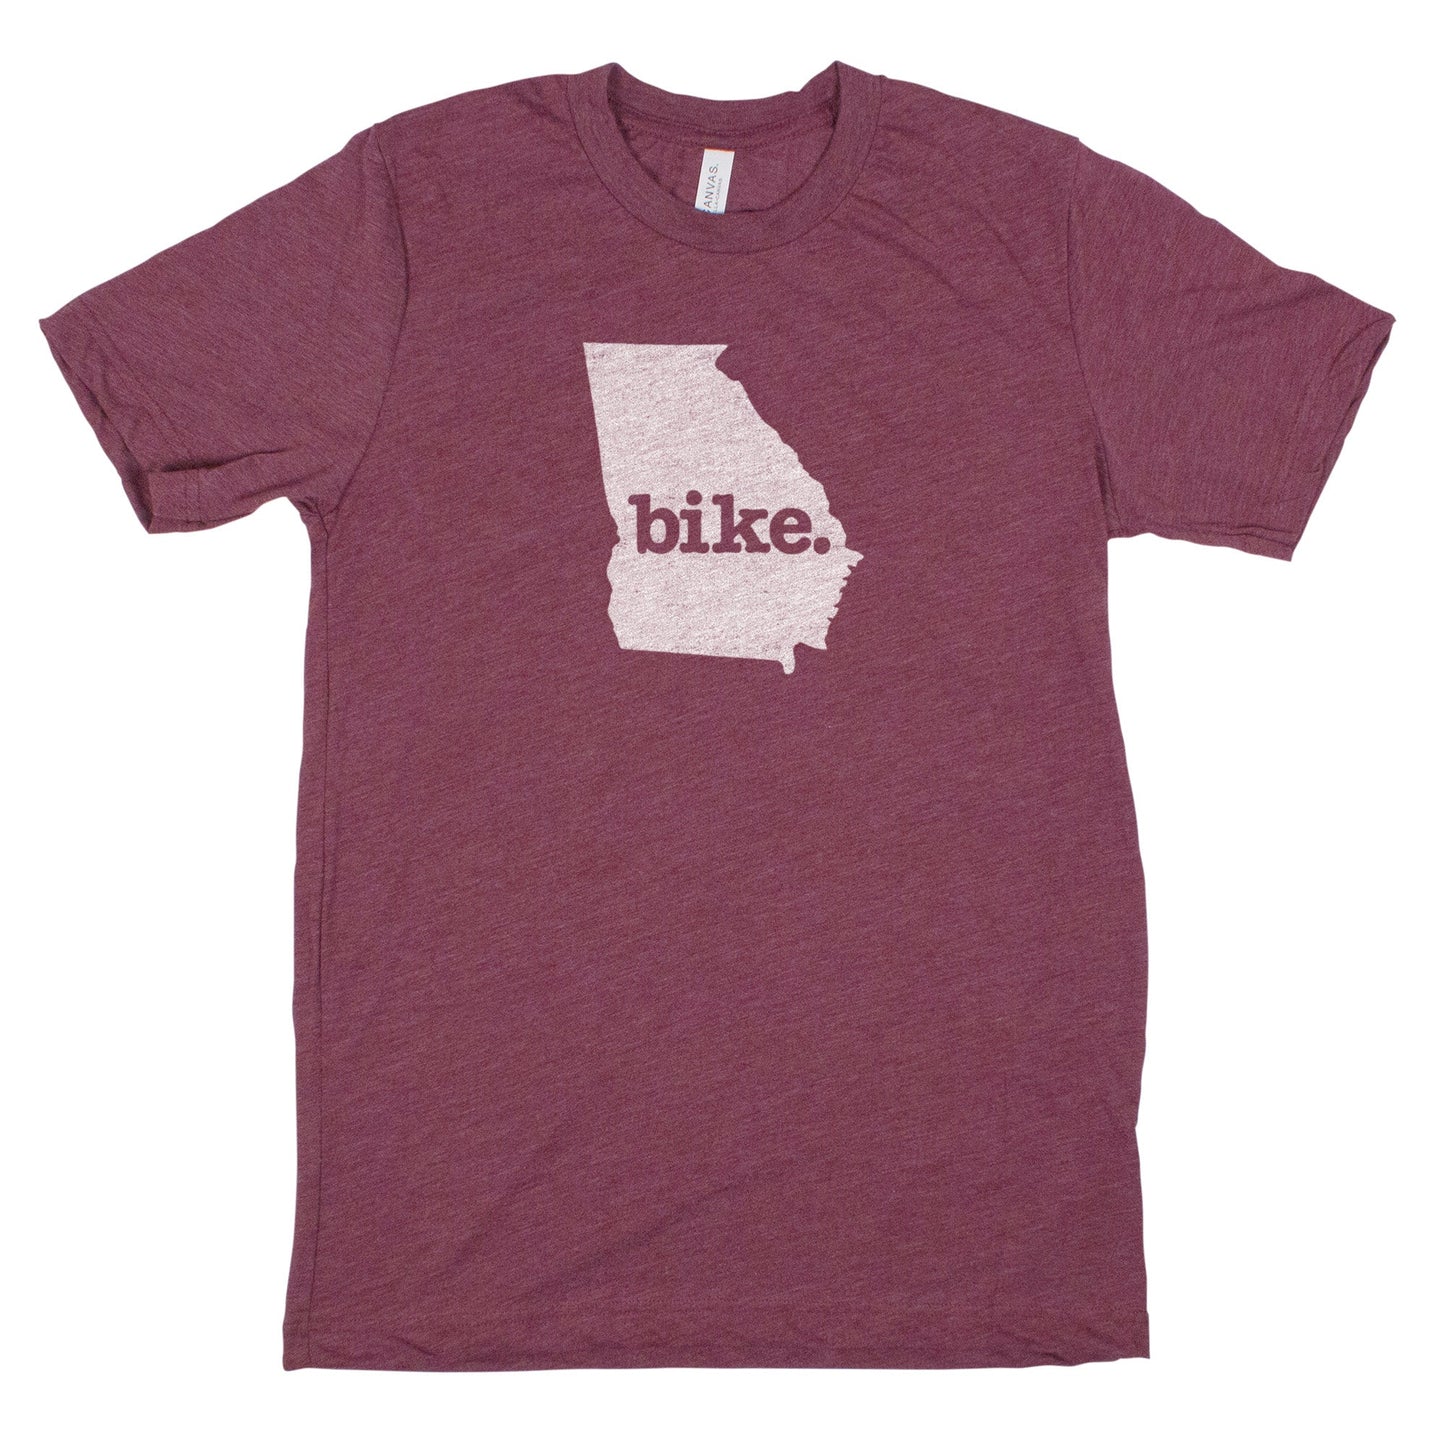 bike. Men's Unisex T-Shirt - Georgia